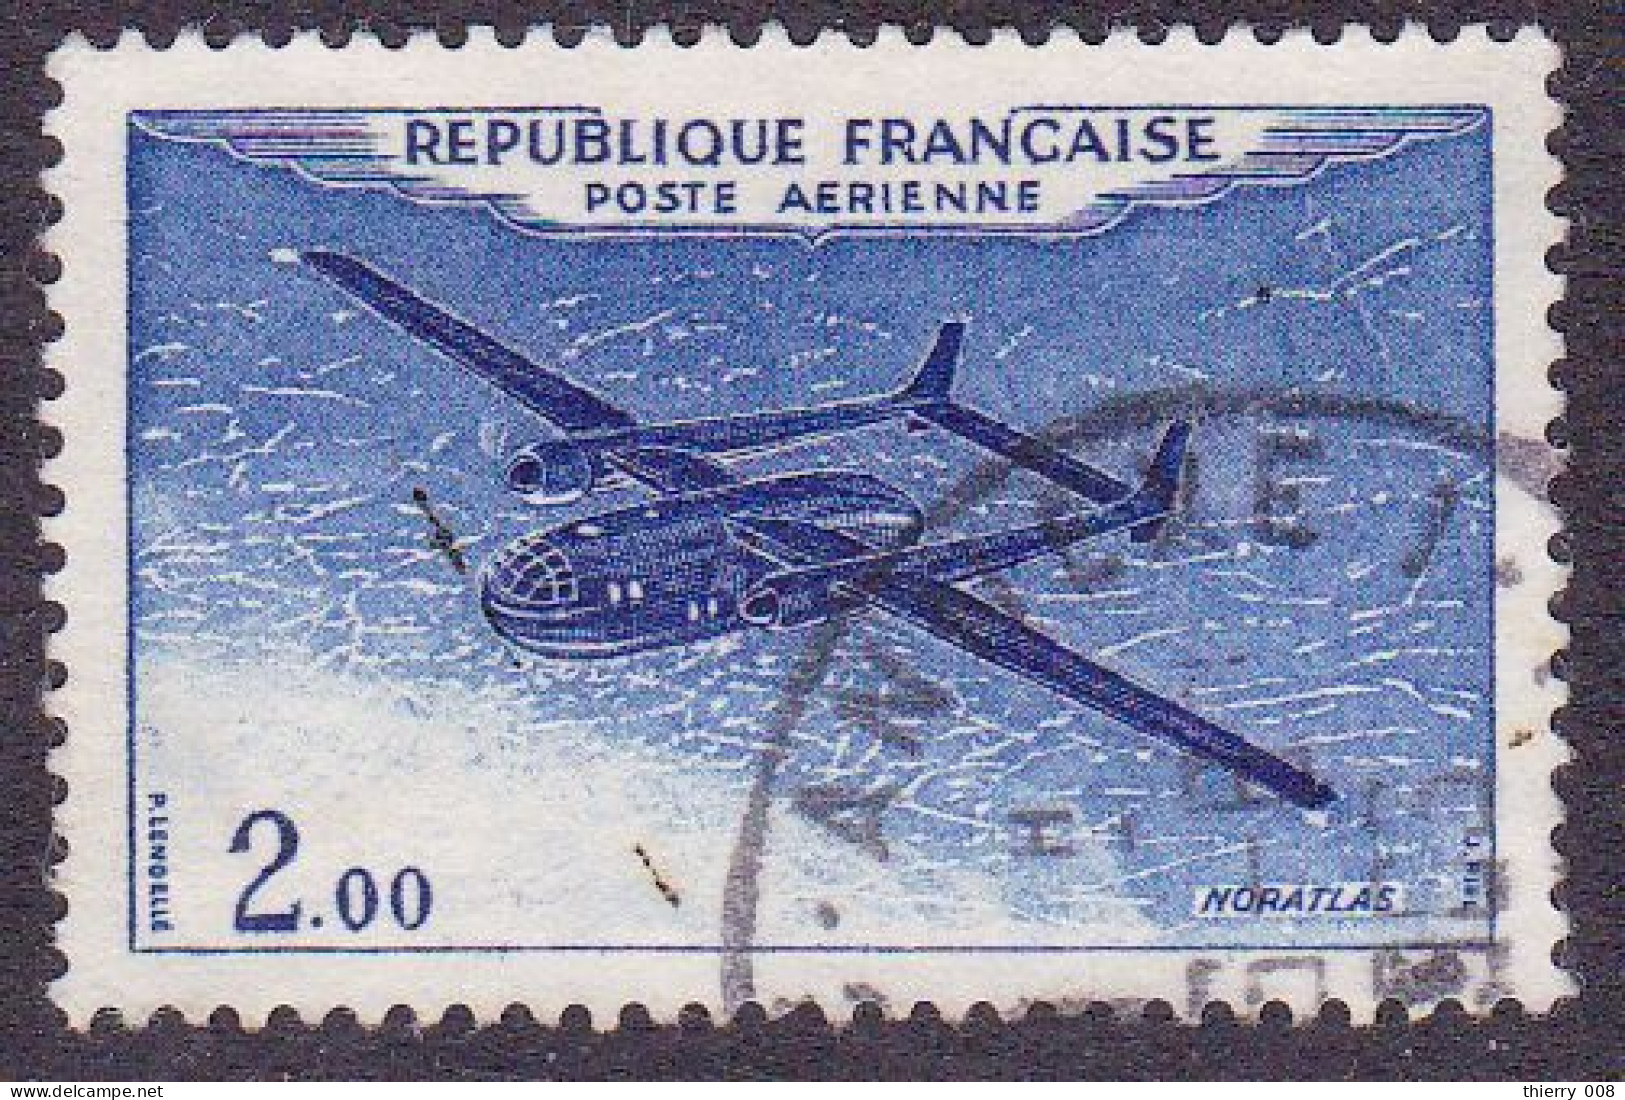 France 1960 1964 Poste Aérienne PA 38 Prototypes Nord Aviation Noratlas  Oblitéré - 1960-.... Afgestempeld